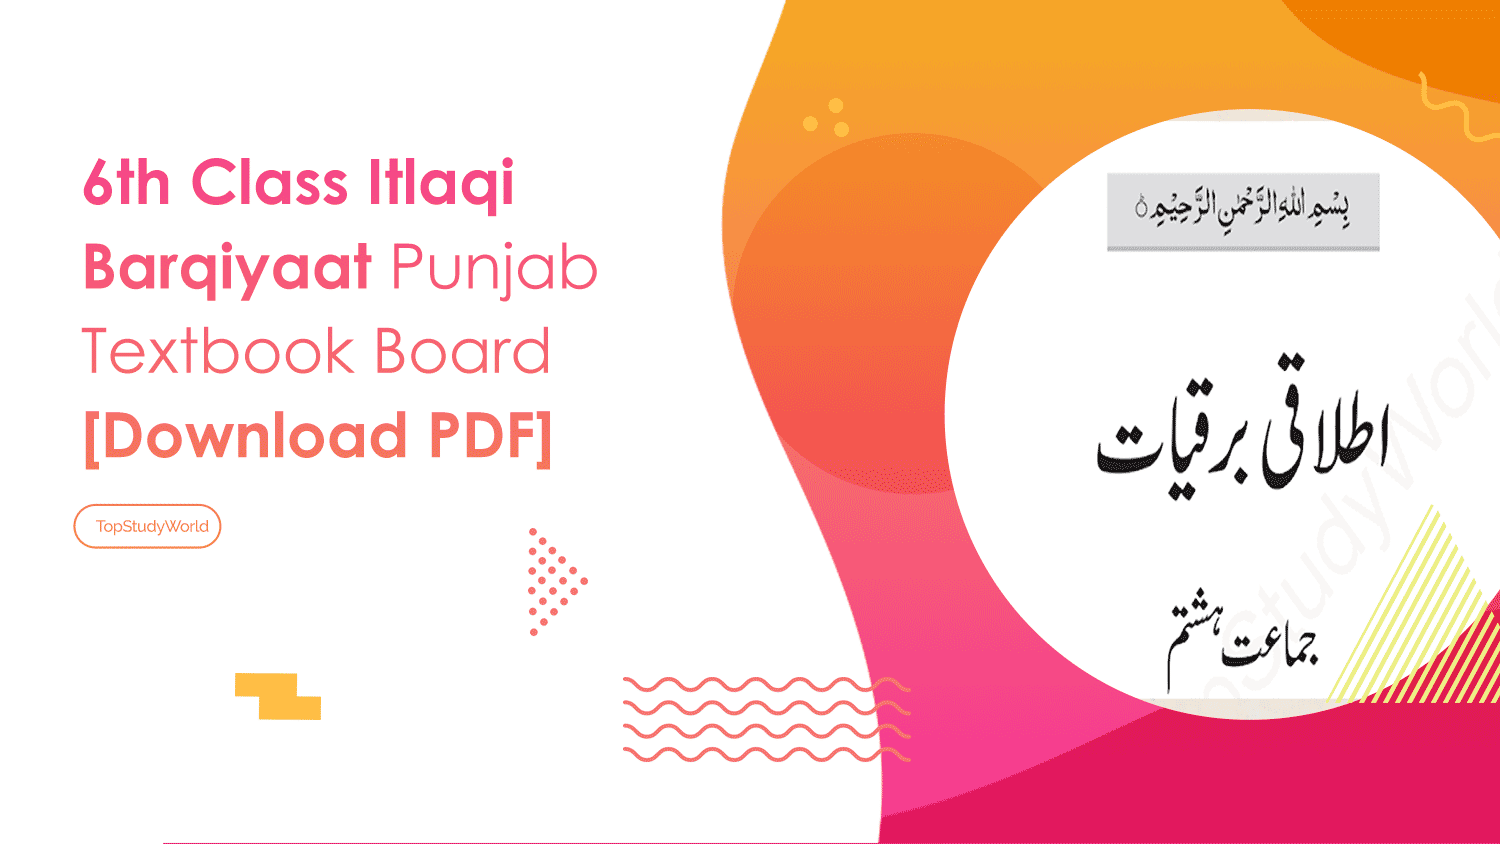 6th Class Itlaqi Barqiyaat Punjab Textbook Board [Download PDF]